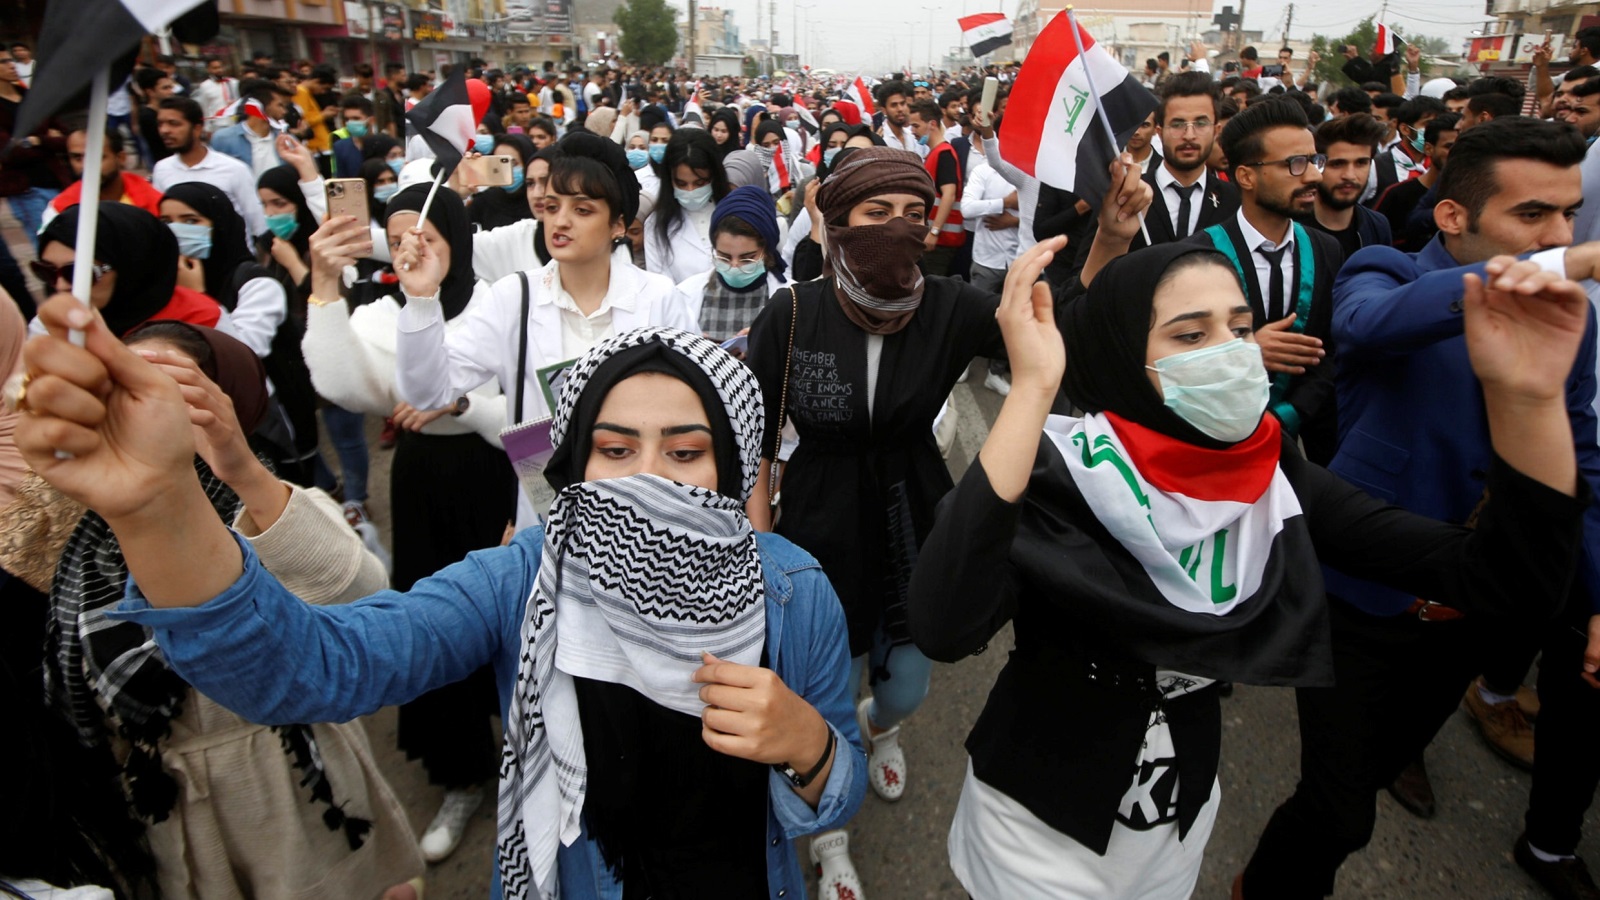 طلبة جامعات شاركوا في الاحتجاجات للمطالبة بإصلاحات في العراق (رويترز)